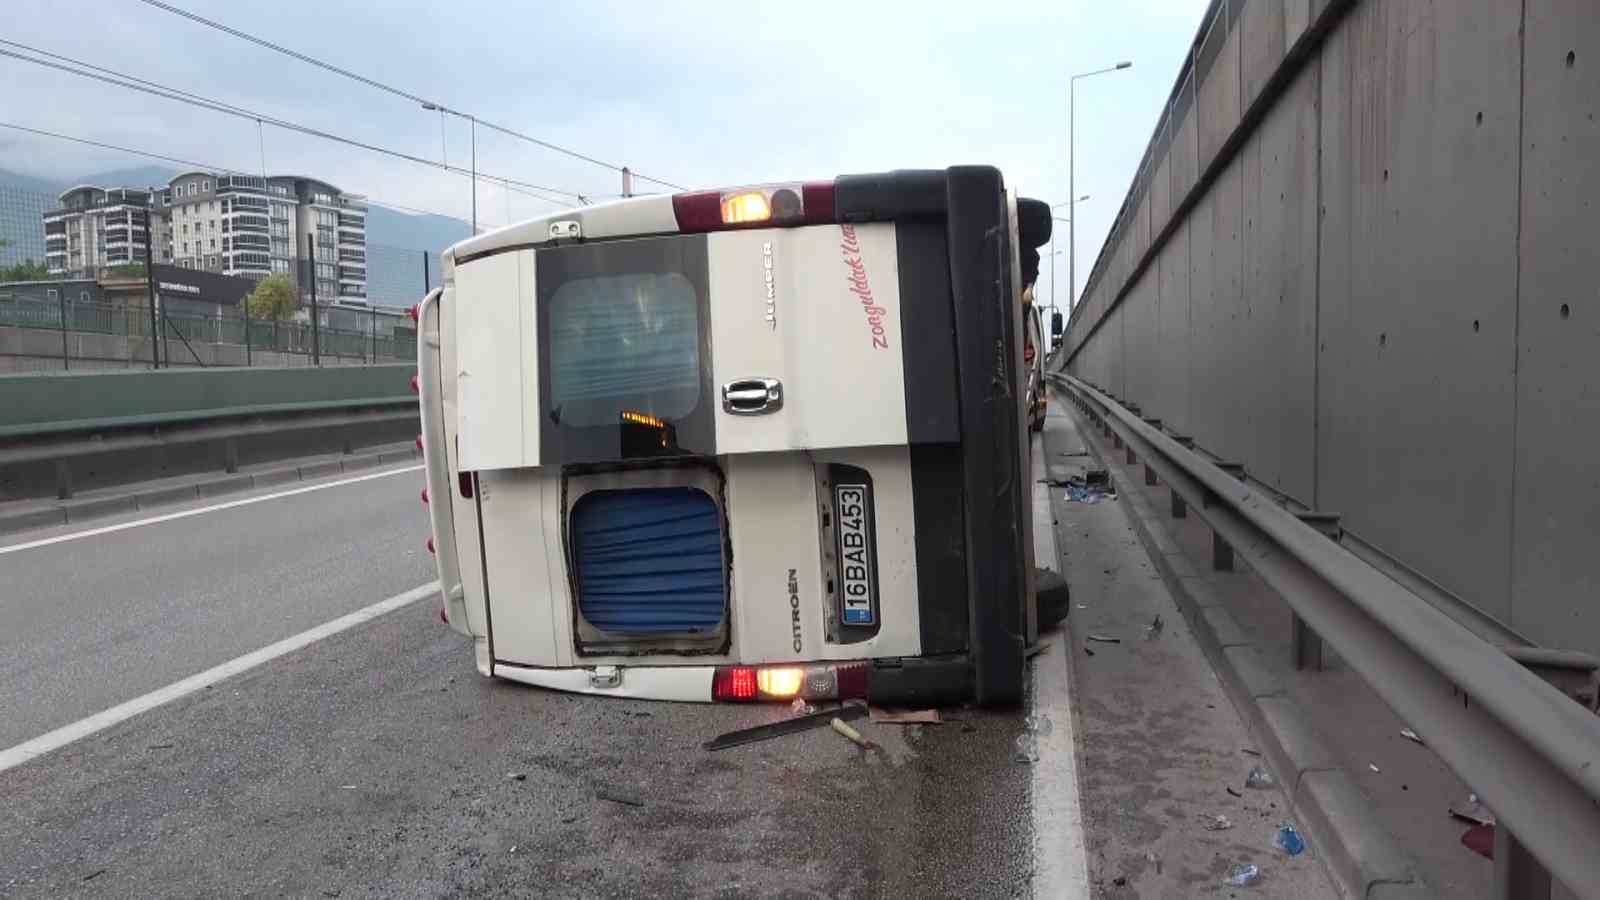 Bursa’da kontrolden çıkan ticari minibüs devrildi: 1 yaralı